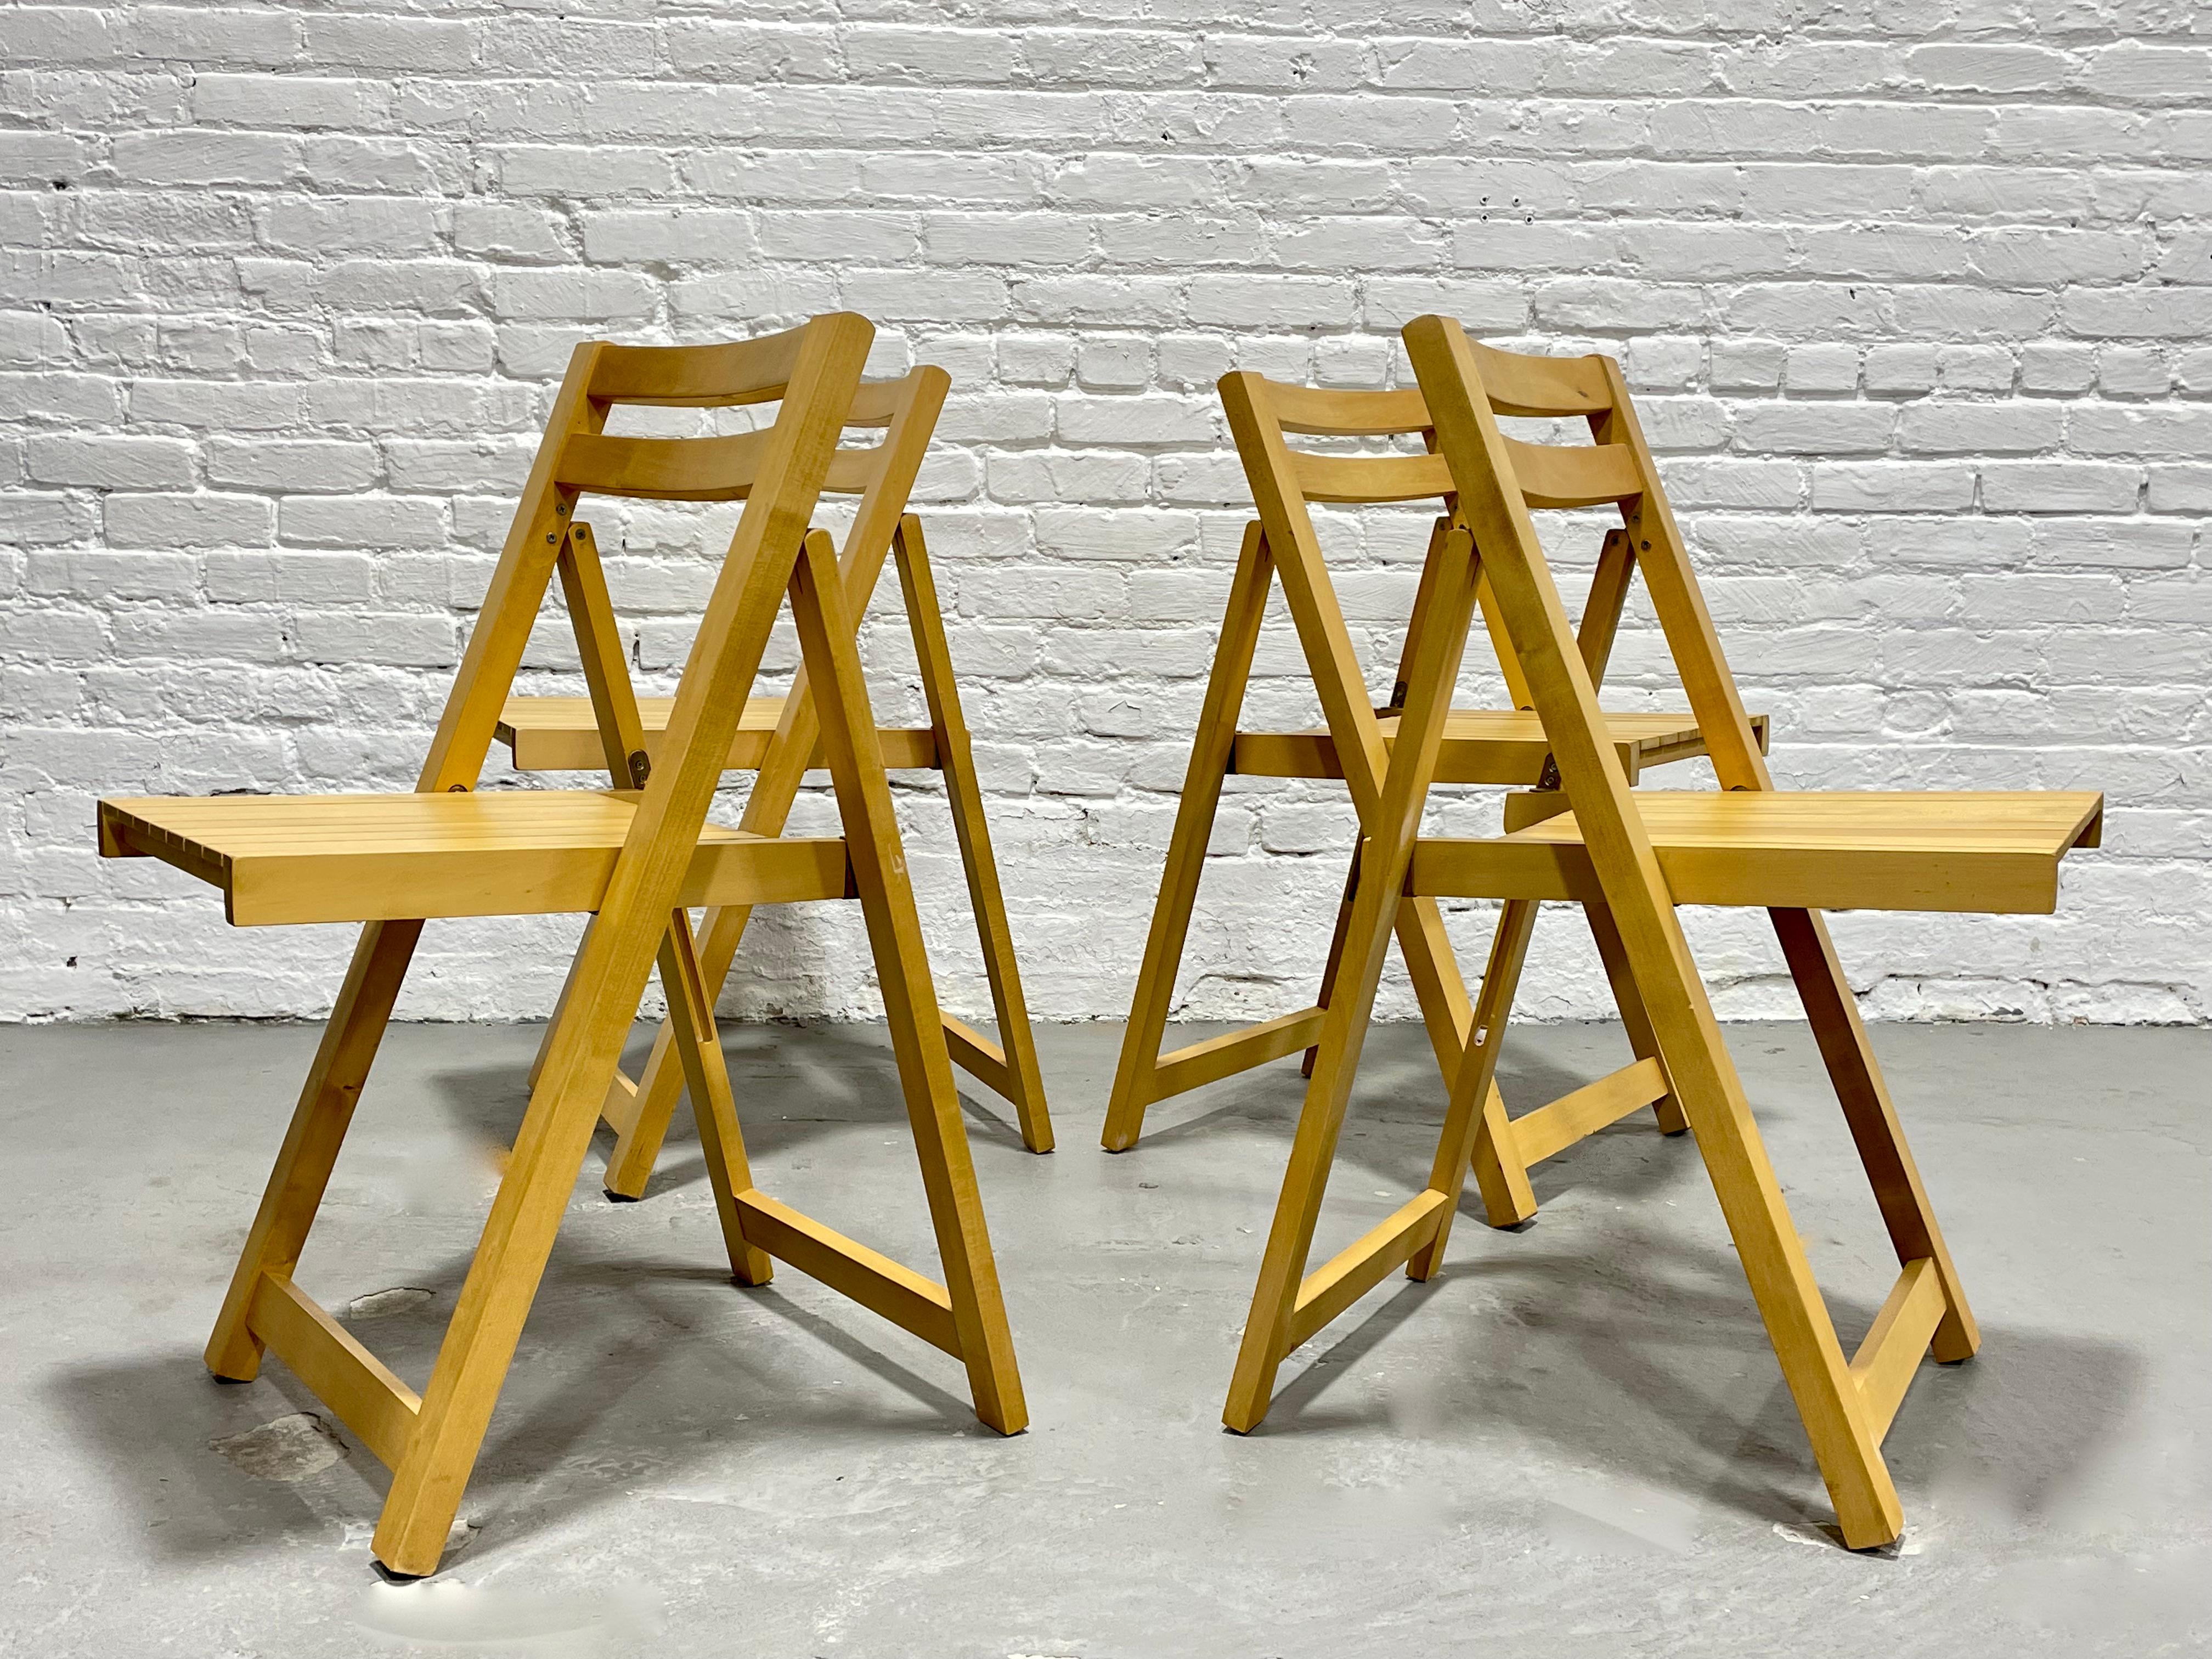 Ensemble de quatre chaises pliantes en hêtre massif, fabriquées en Roumanie. Cet ensemble solide et robuste présente des lignes minimalistes et est superbe sous tous les angles.  Les chaises se plient complètement à plat pour le rangement.